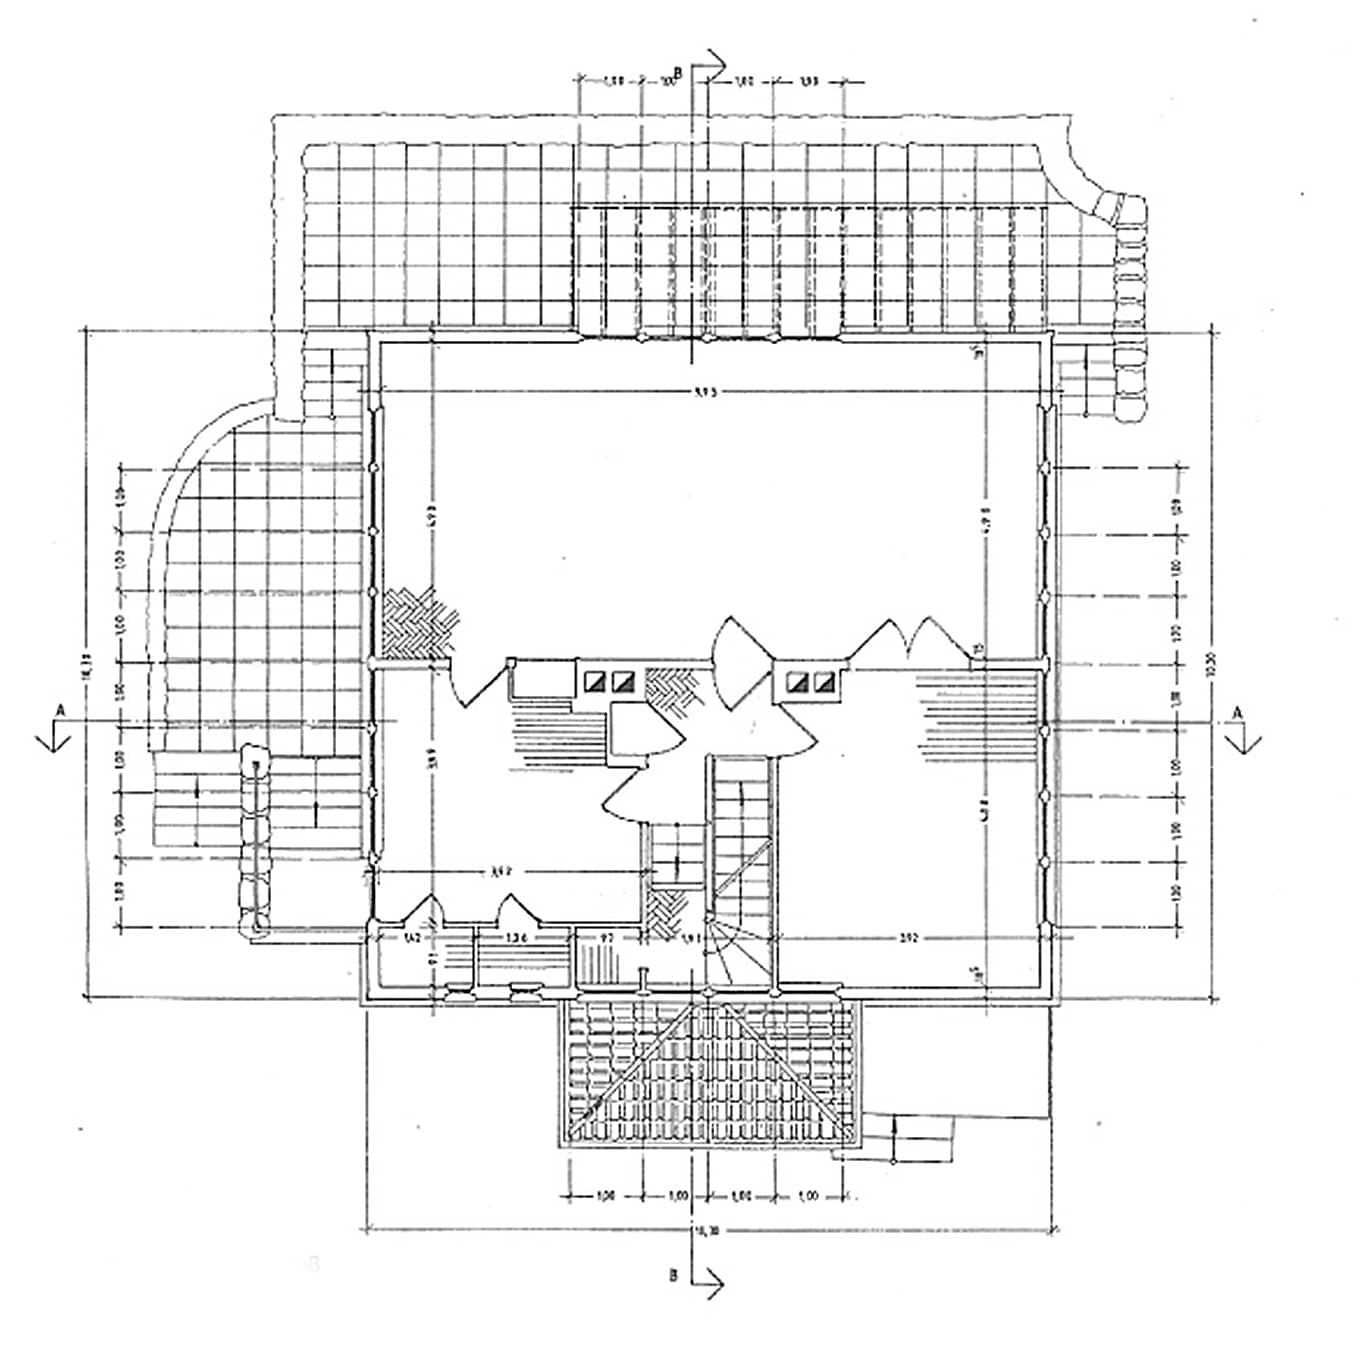 Plan des Neufert Hauses - Grundriss Erdgeschoss, Weimar